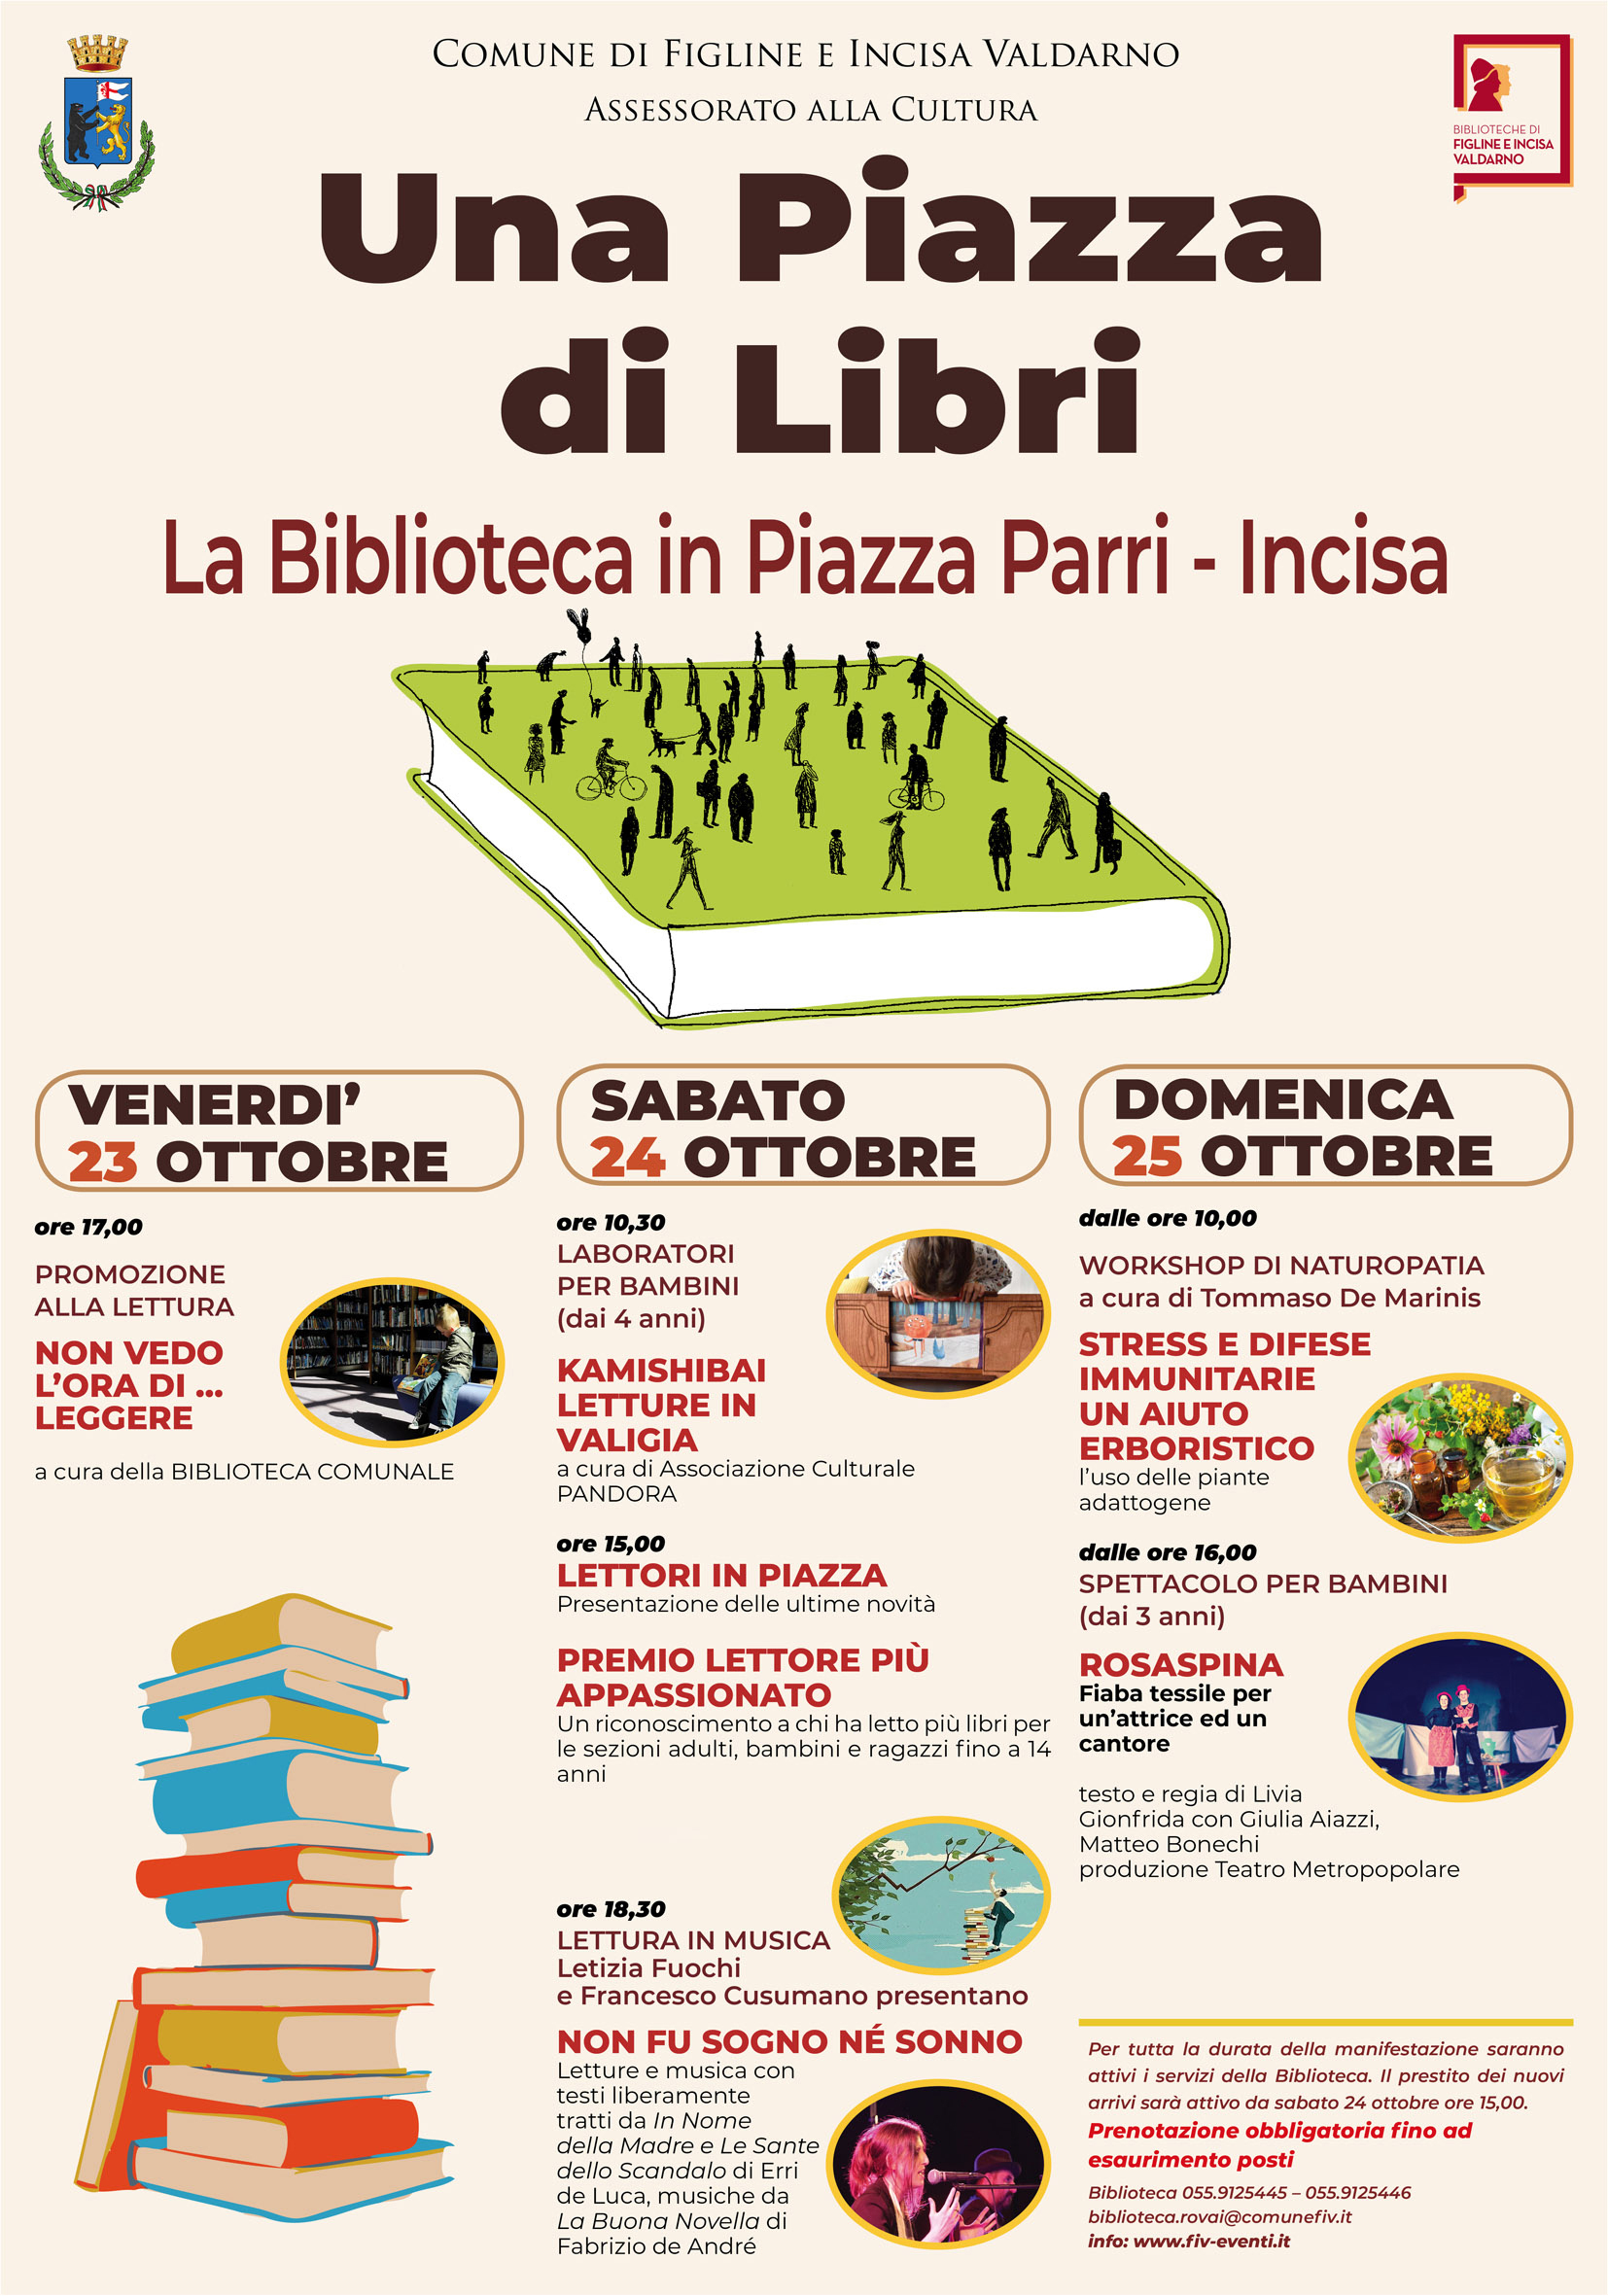 Da venerdì a domenica piazza Parri diventa “Una piazza di libri”